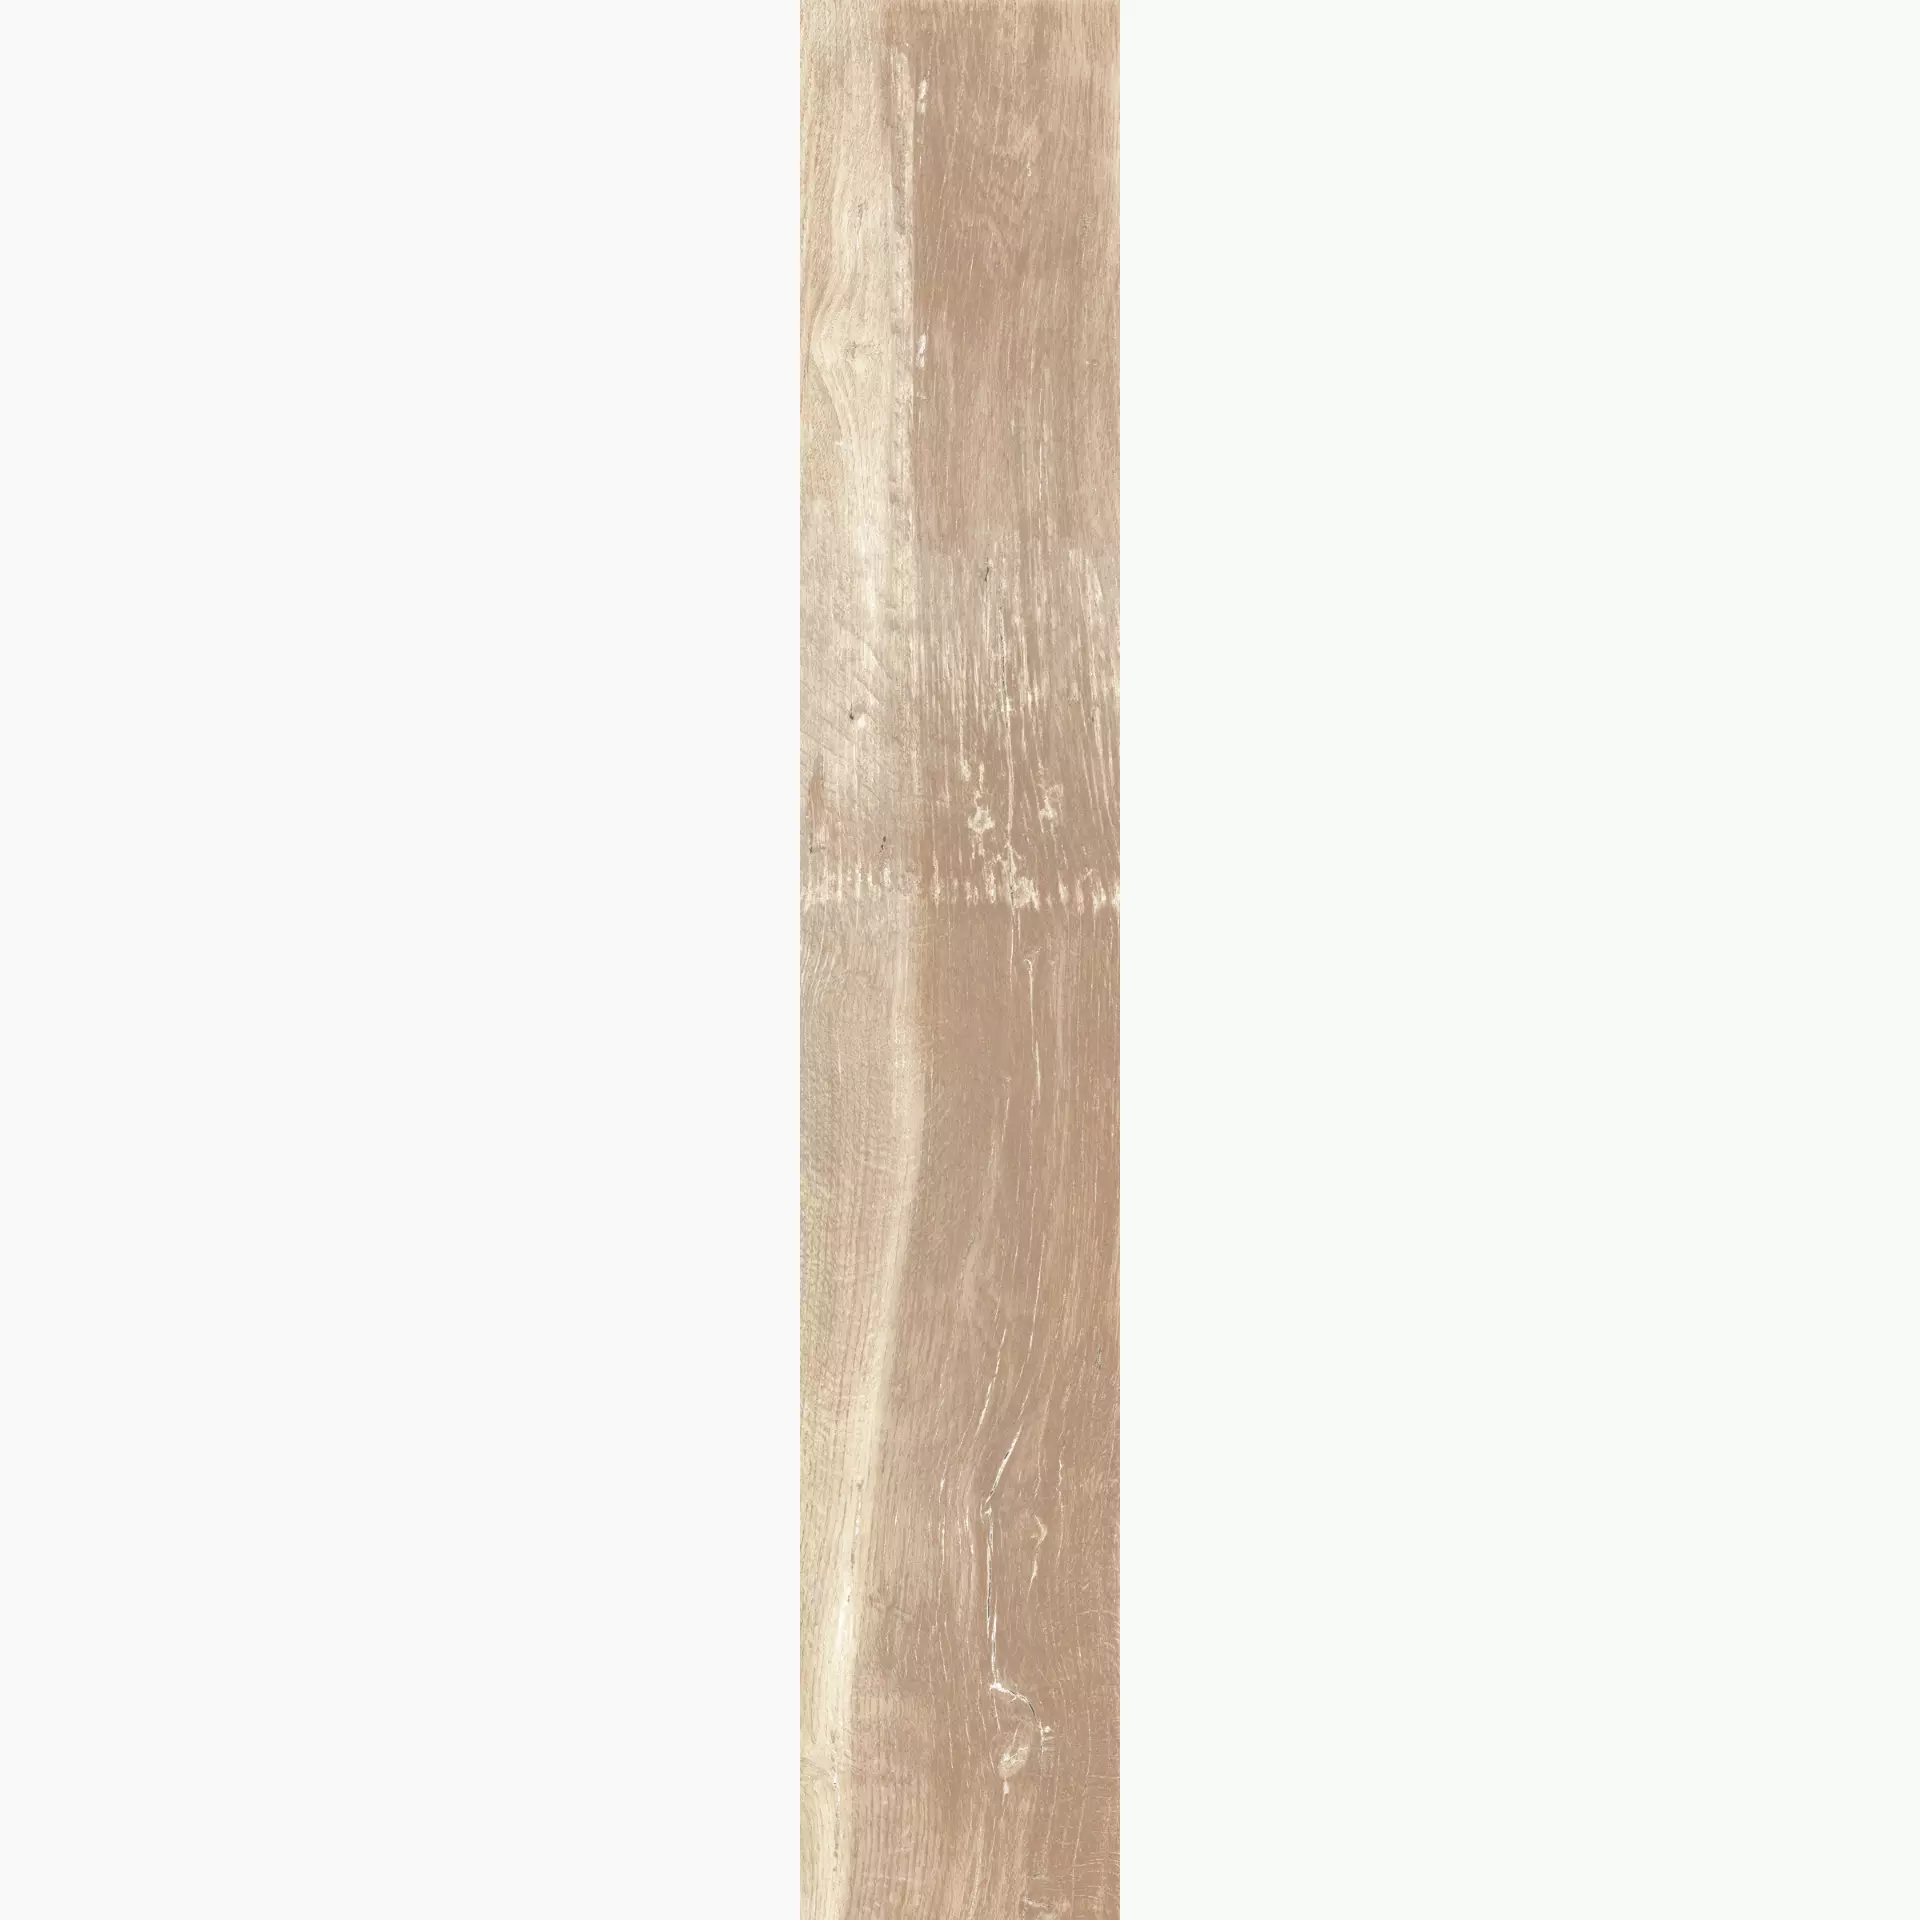 KRONOS Woodside Oak Grip 6591 20x120cm rectified 9mm